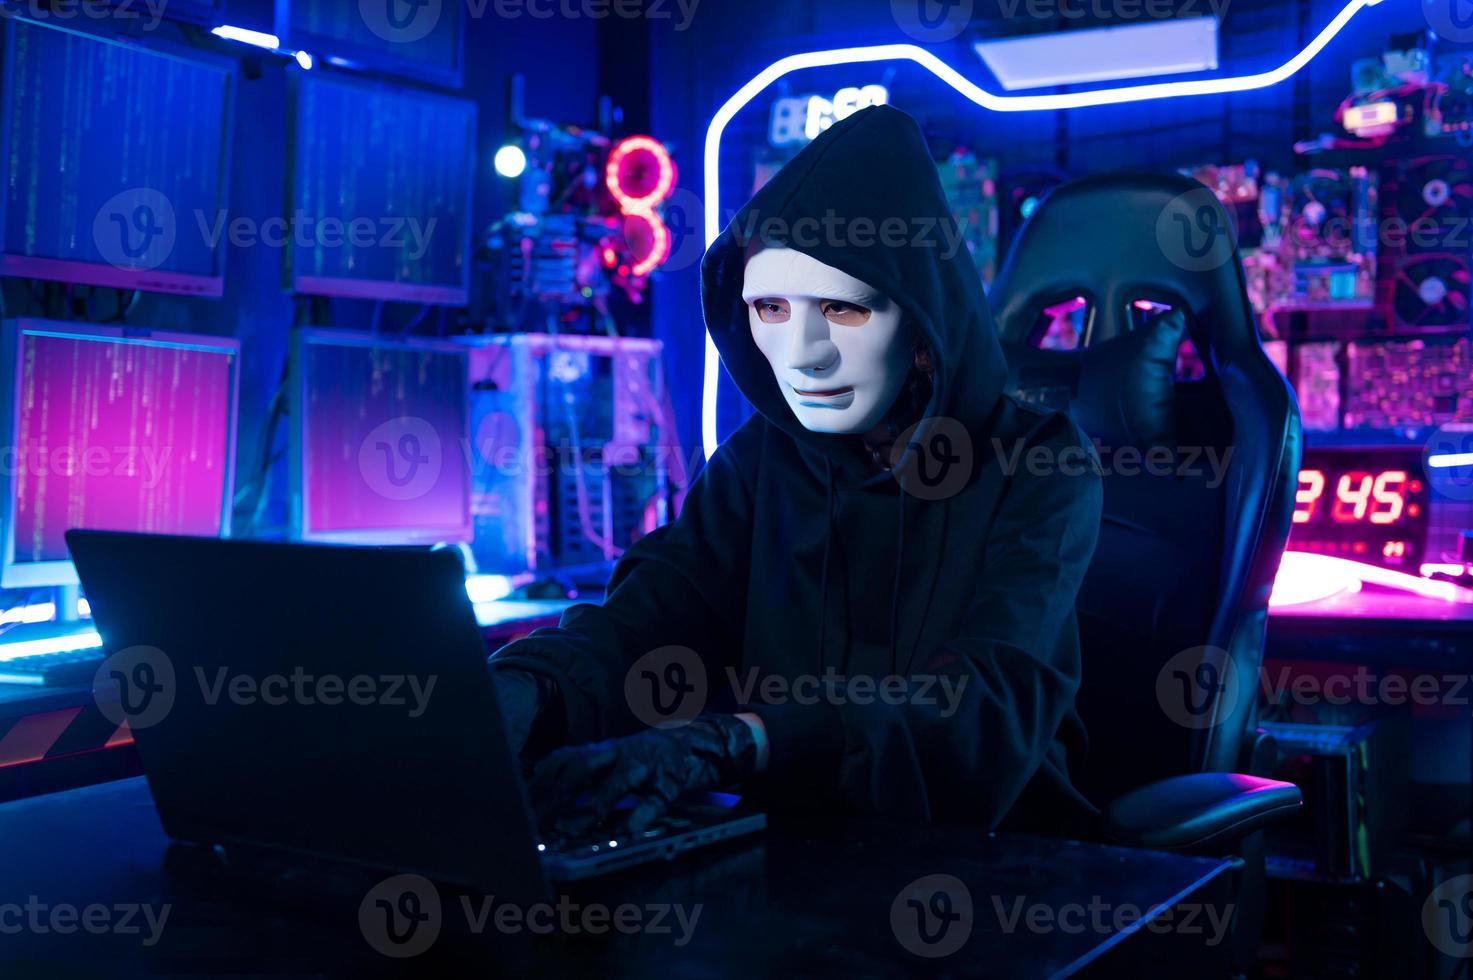 een hacker is gebruik makend van laptop computer naar stelen gegevens in de nacht foto